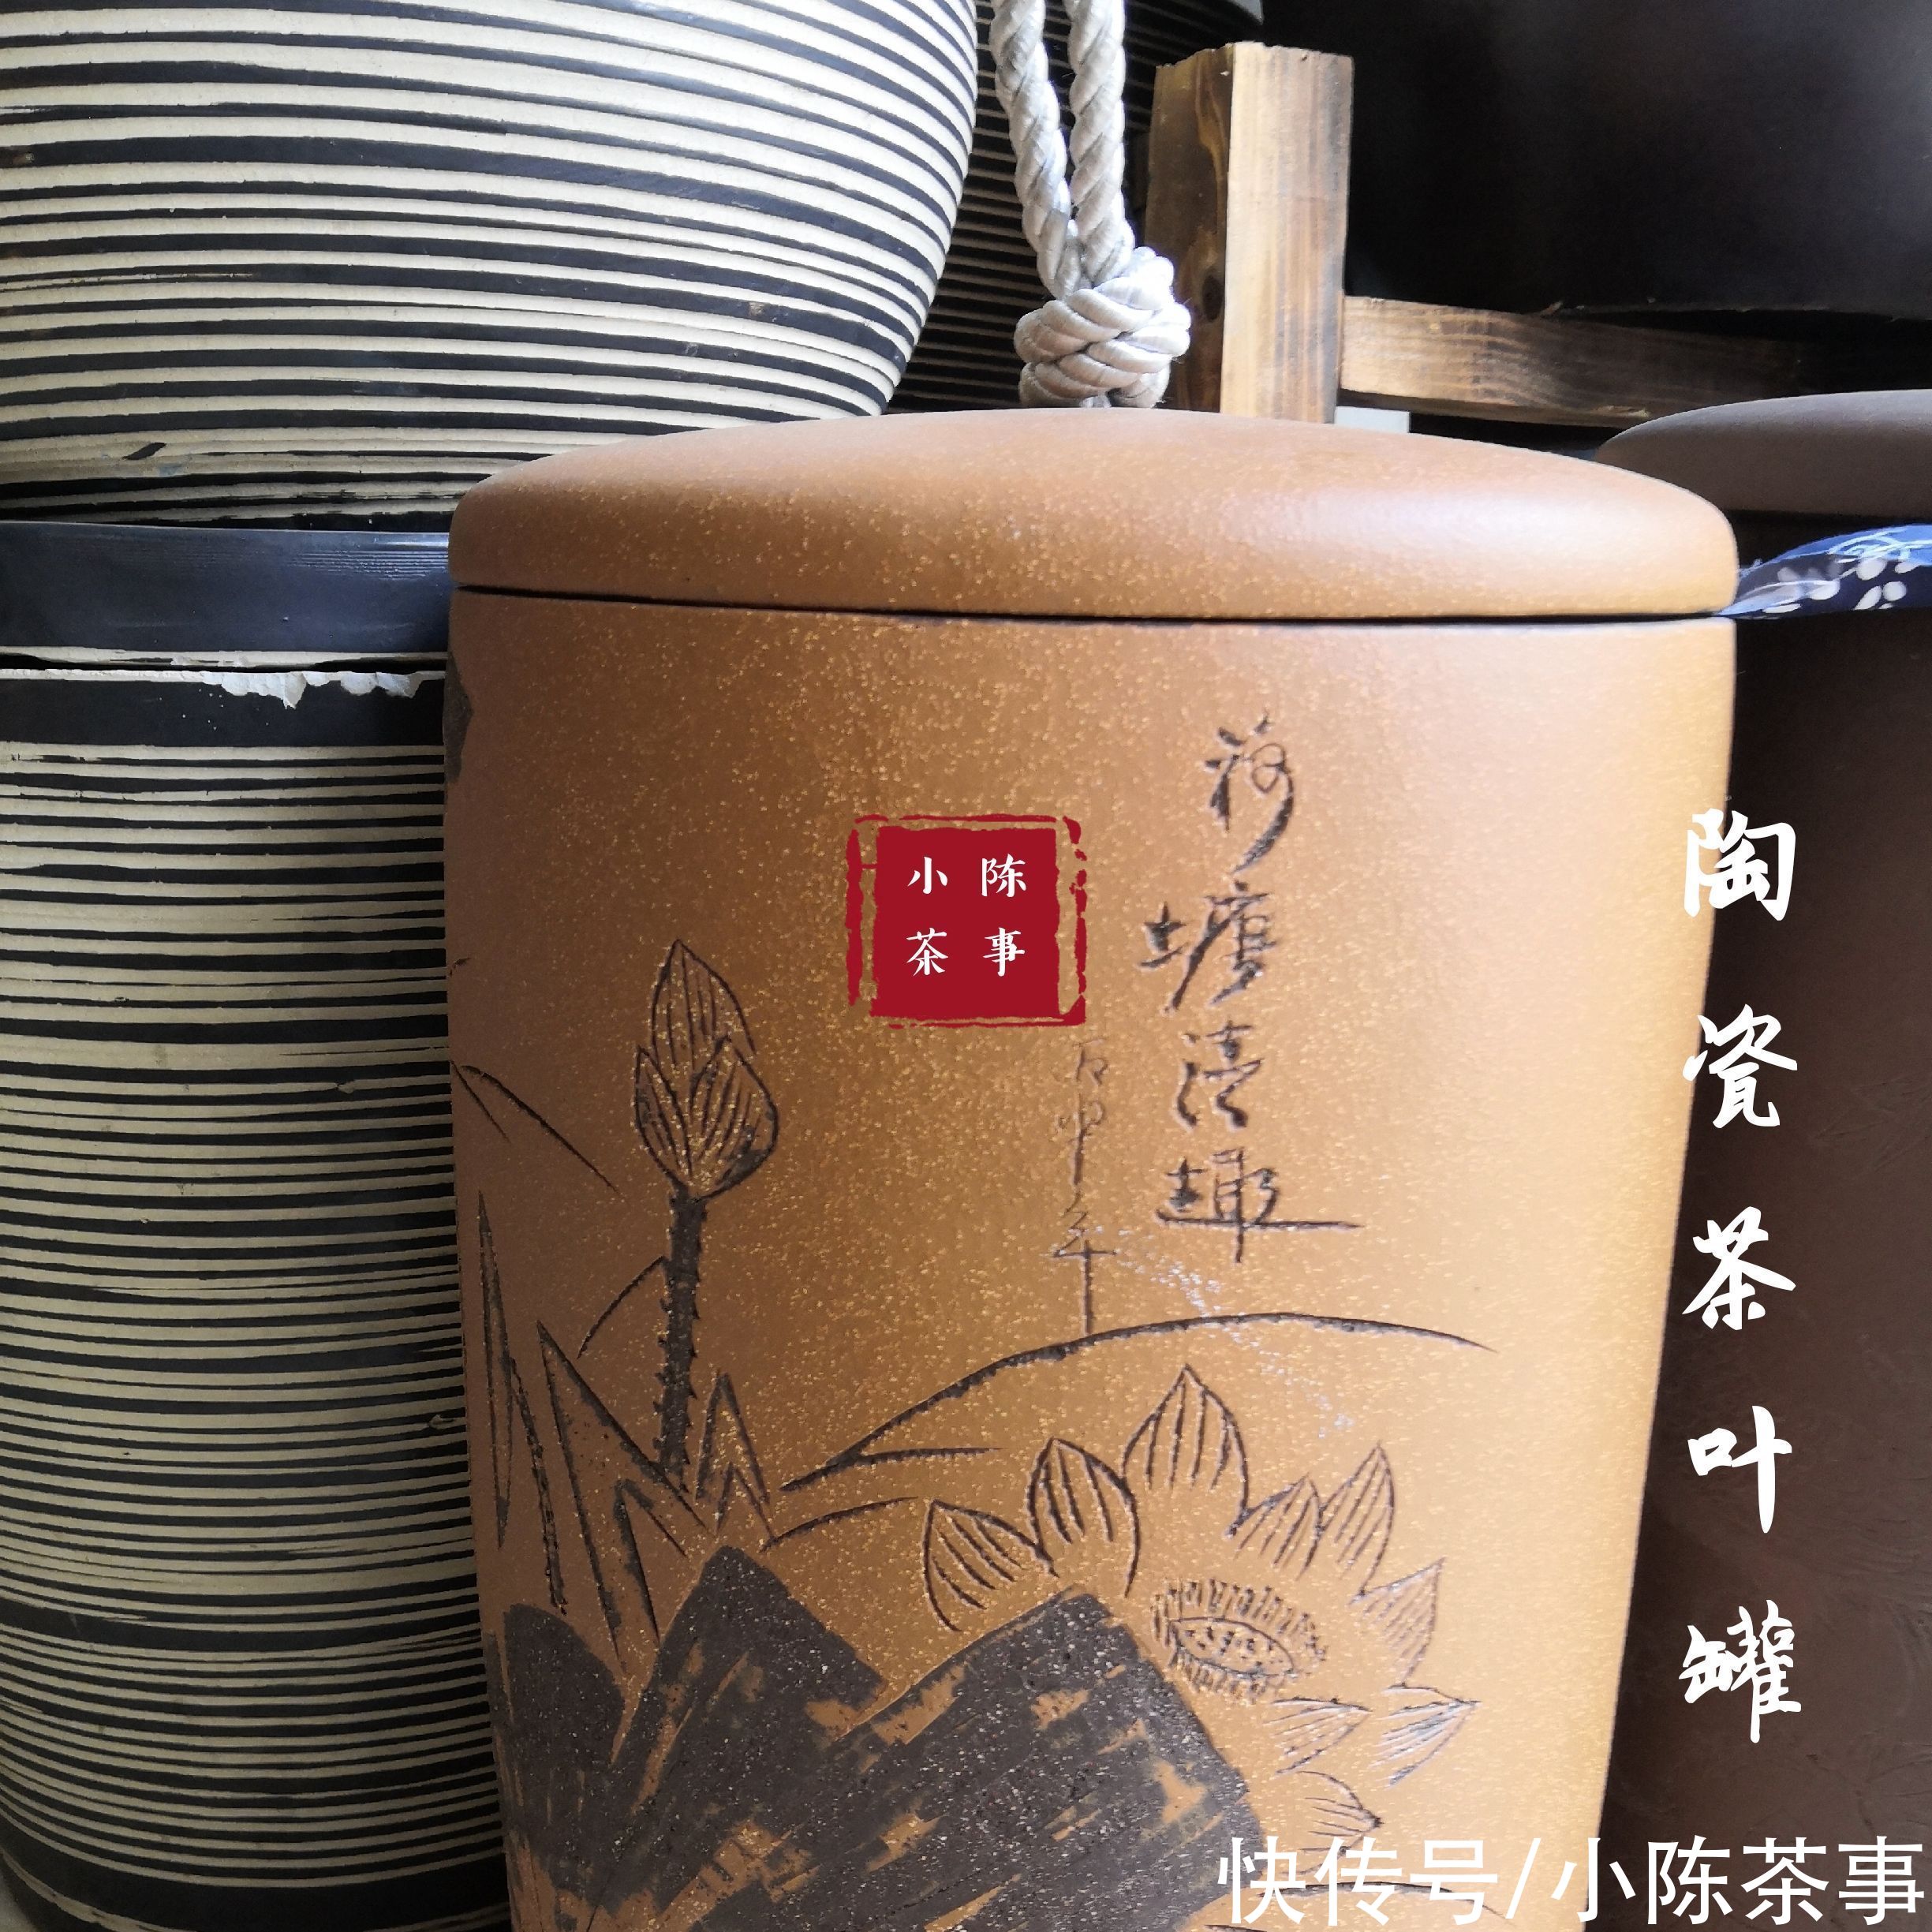 纸箱|铁罐、陶罐、木箱、纸箱，哪种包装最适合存白茶？分享成功经验